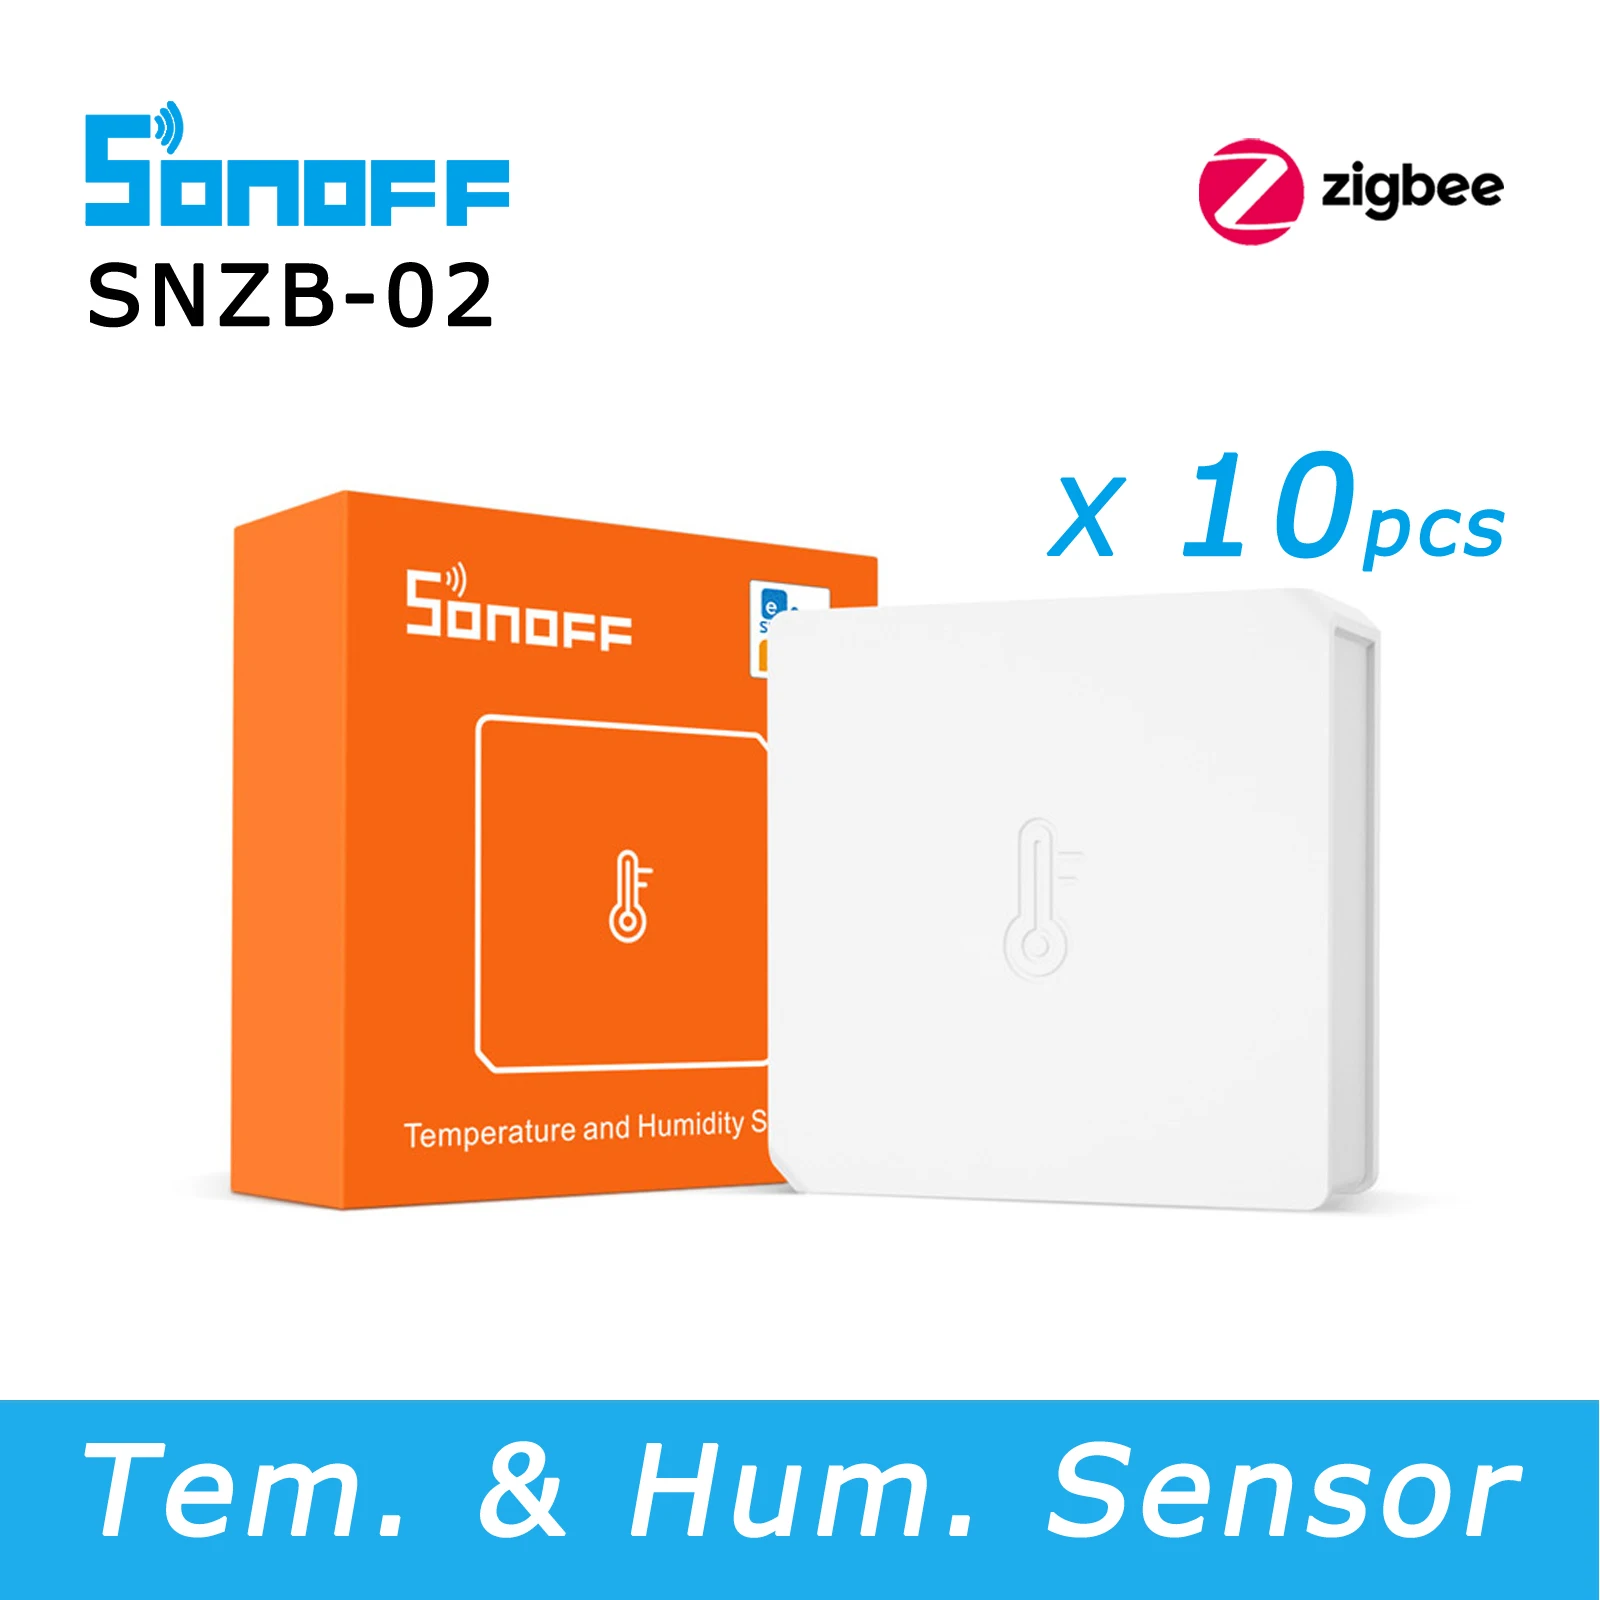 SONOFF-Monitor de Sensor de temperatura y humidificación SNZB 02 Zigbee, funciona con SONOFF Zigbee Bridge, asistente de hogar a través de Zigbee2mqtt